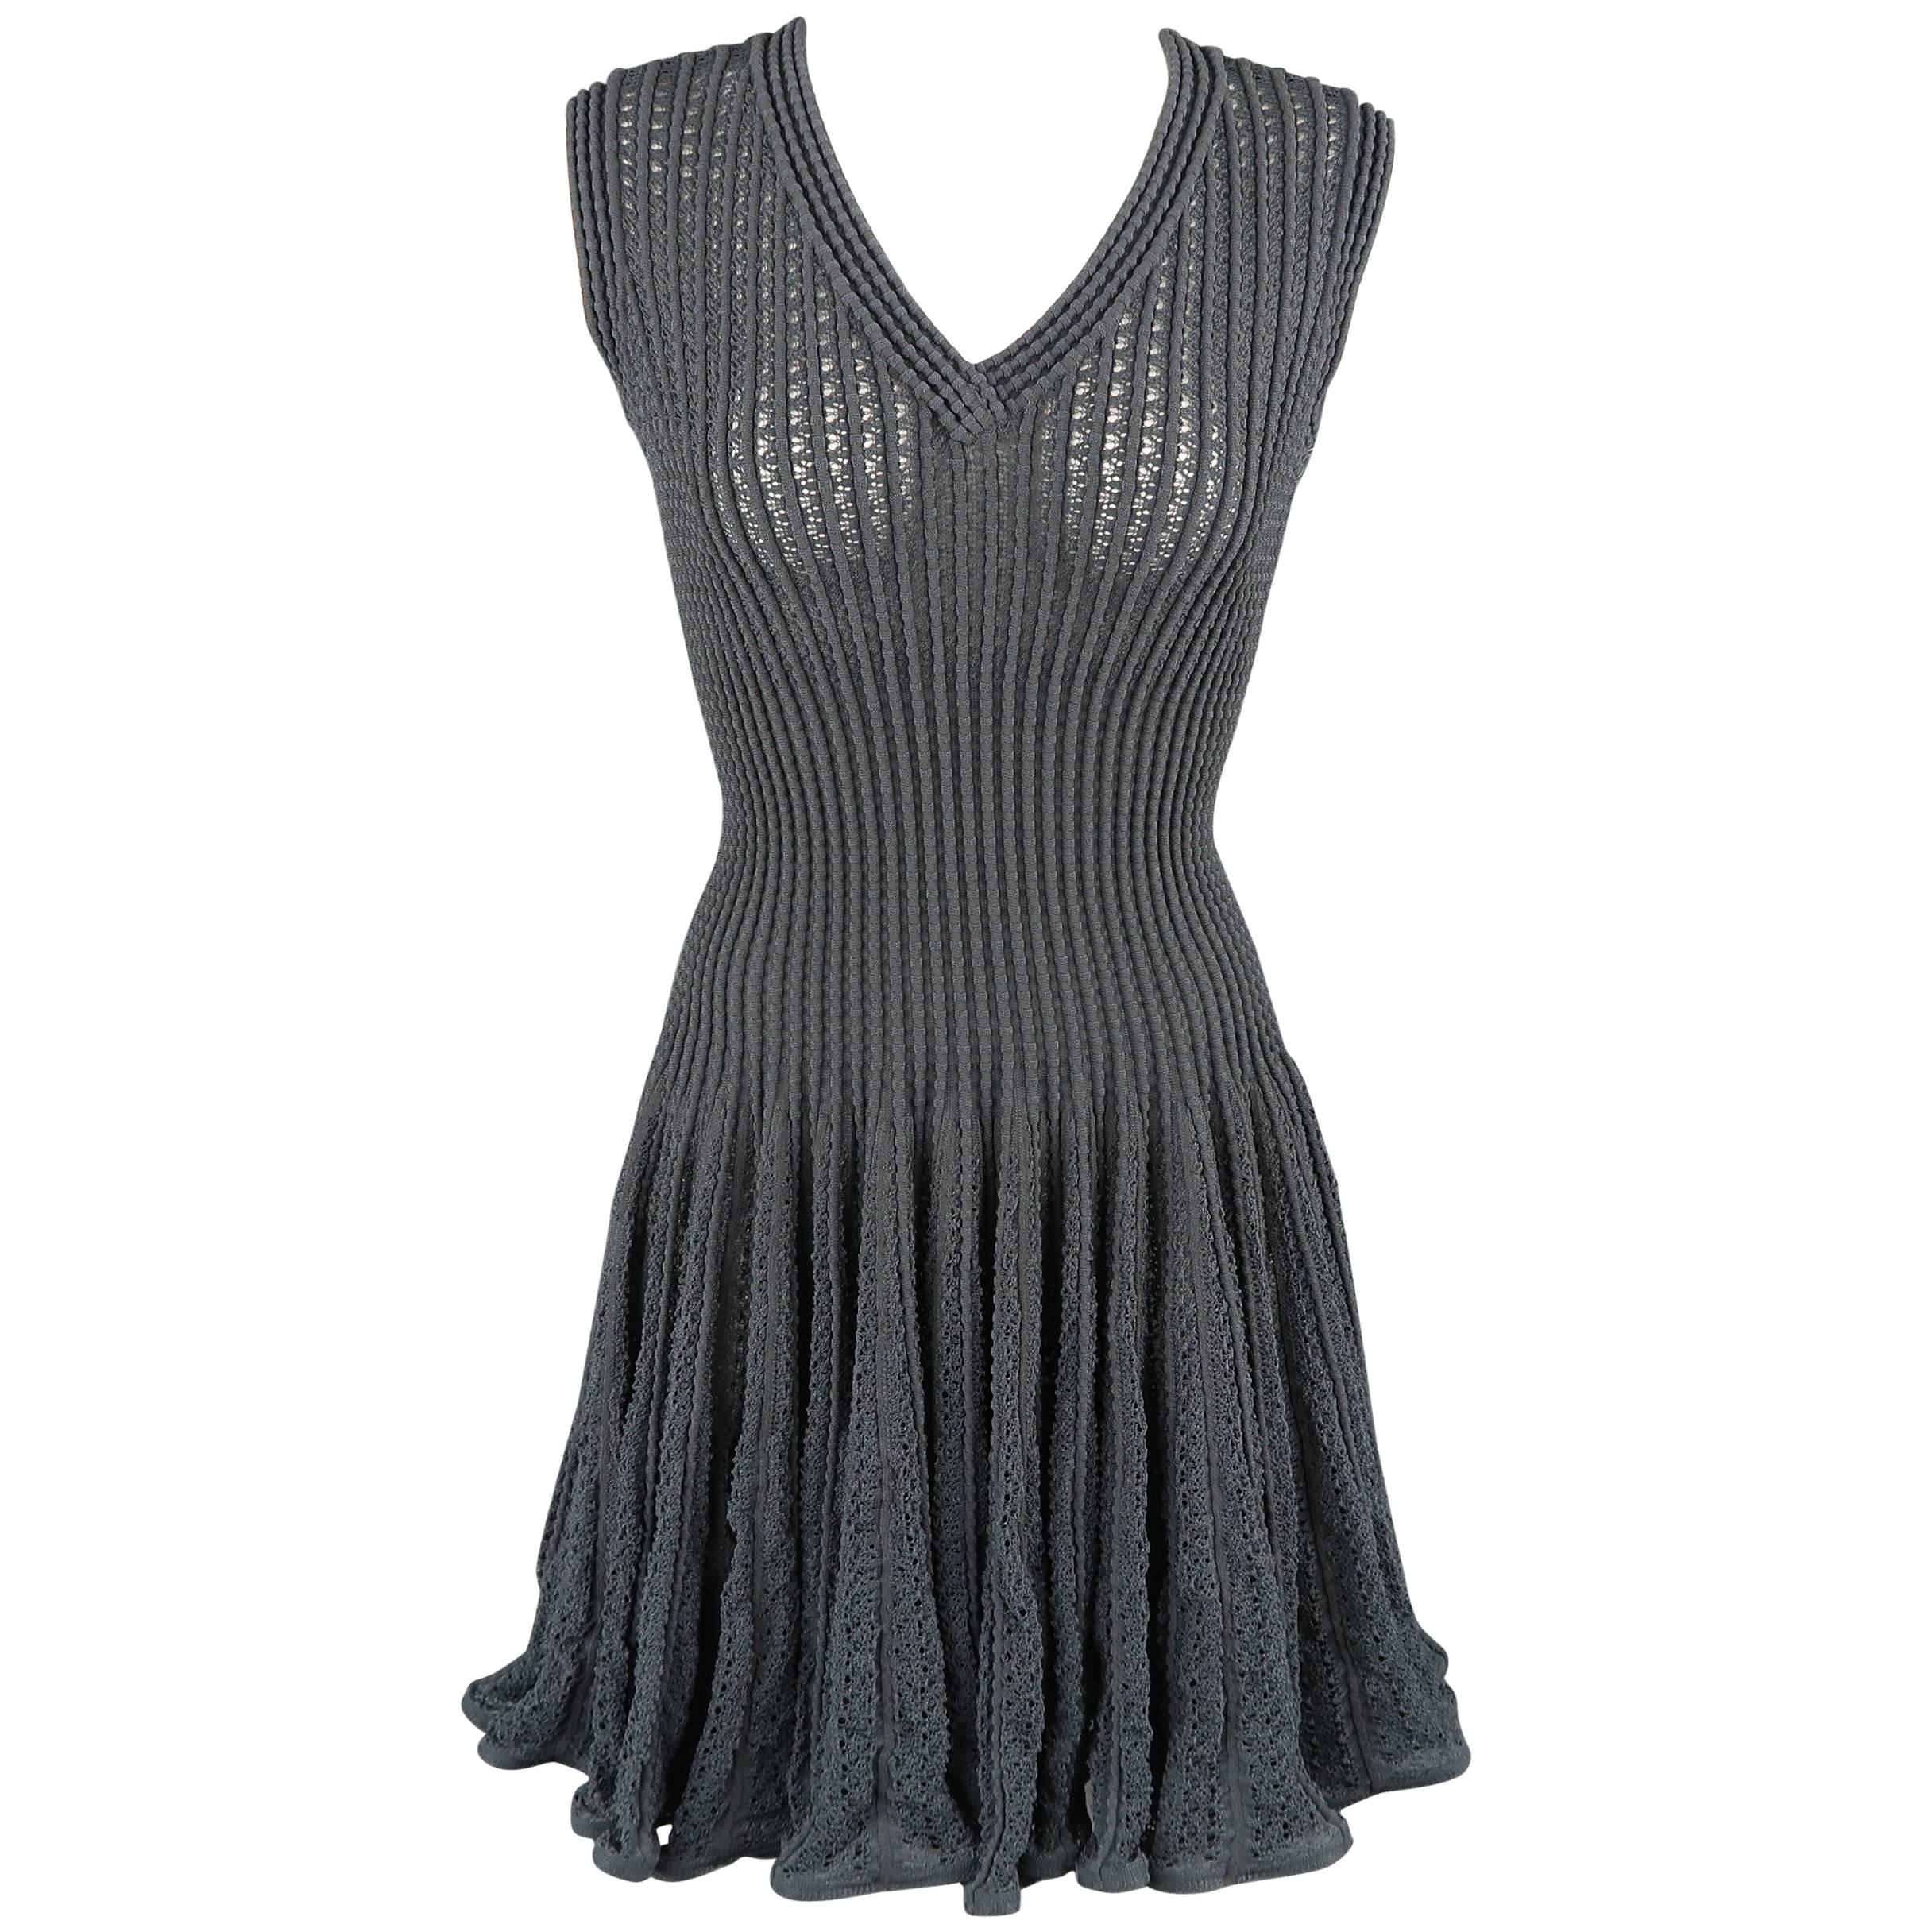 Alaia Dress - Blue Gray Cotton Blend Mesh Knit Ruffle Skirt